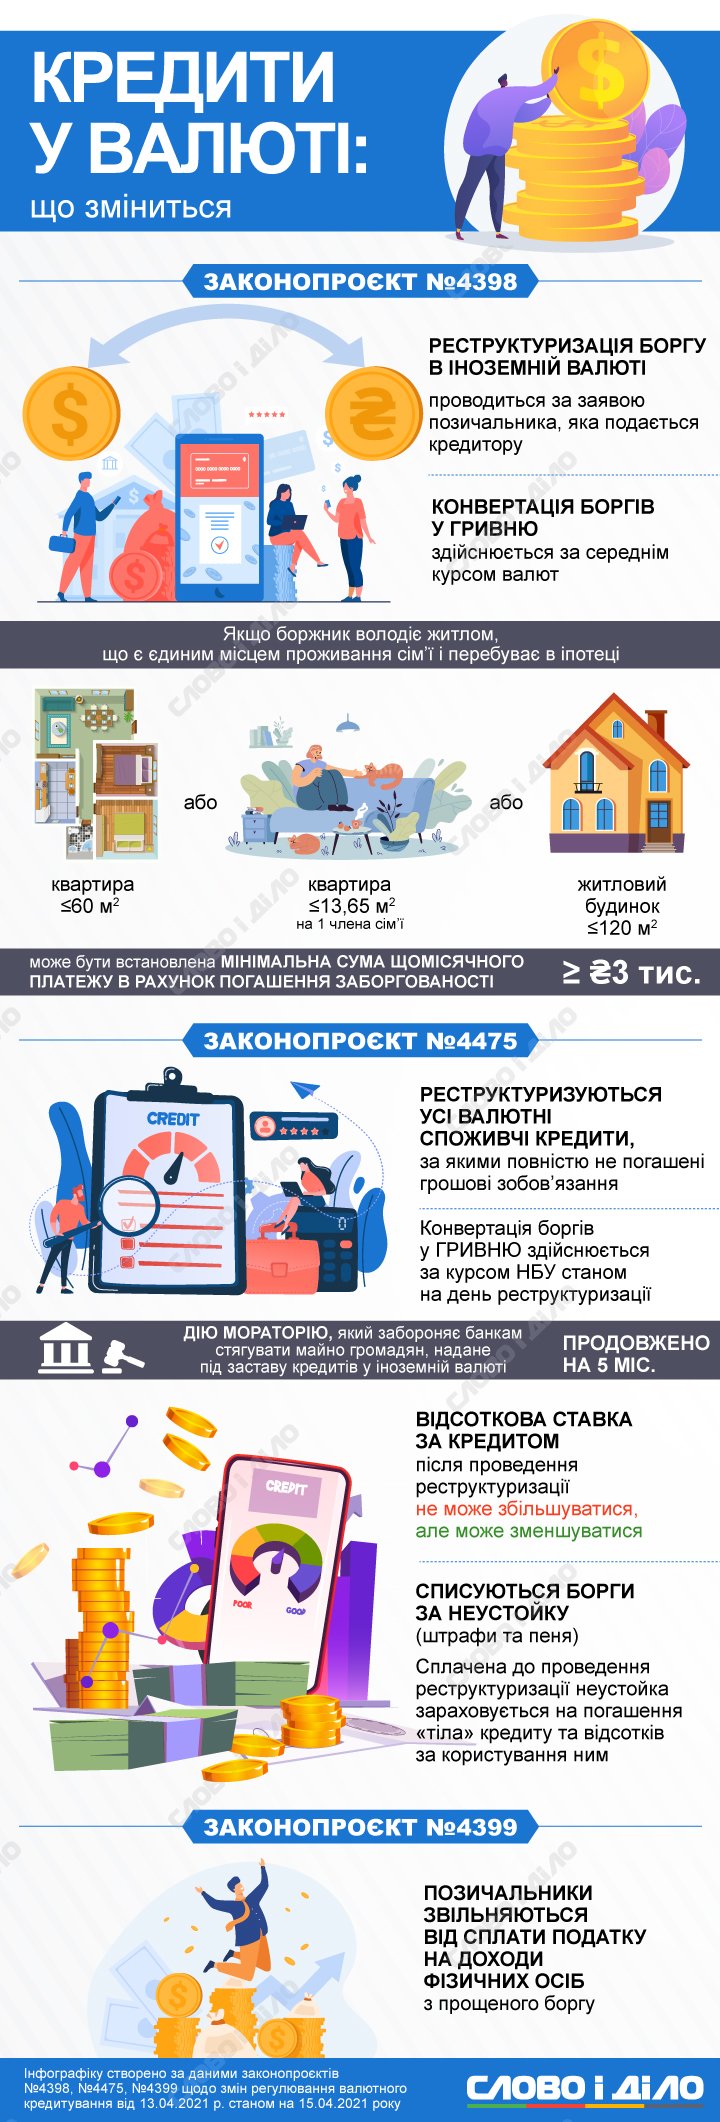 Рада приняла законы для защиты должников по валютным кредитам. Что изменится для украинцев – на инфографике.